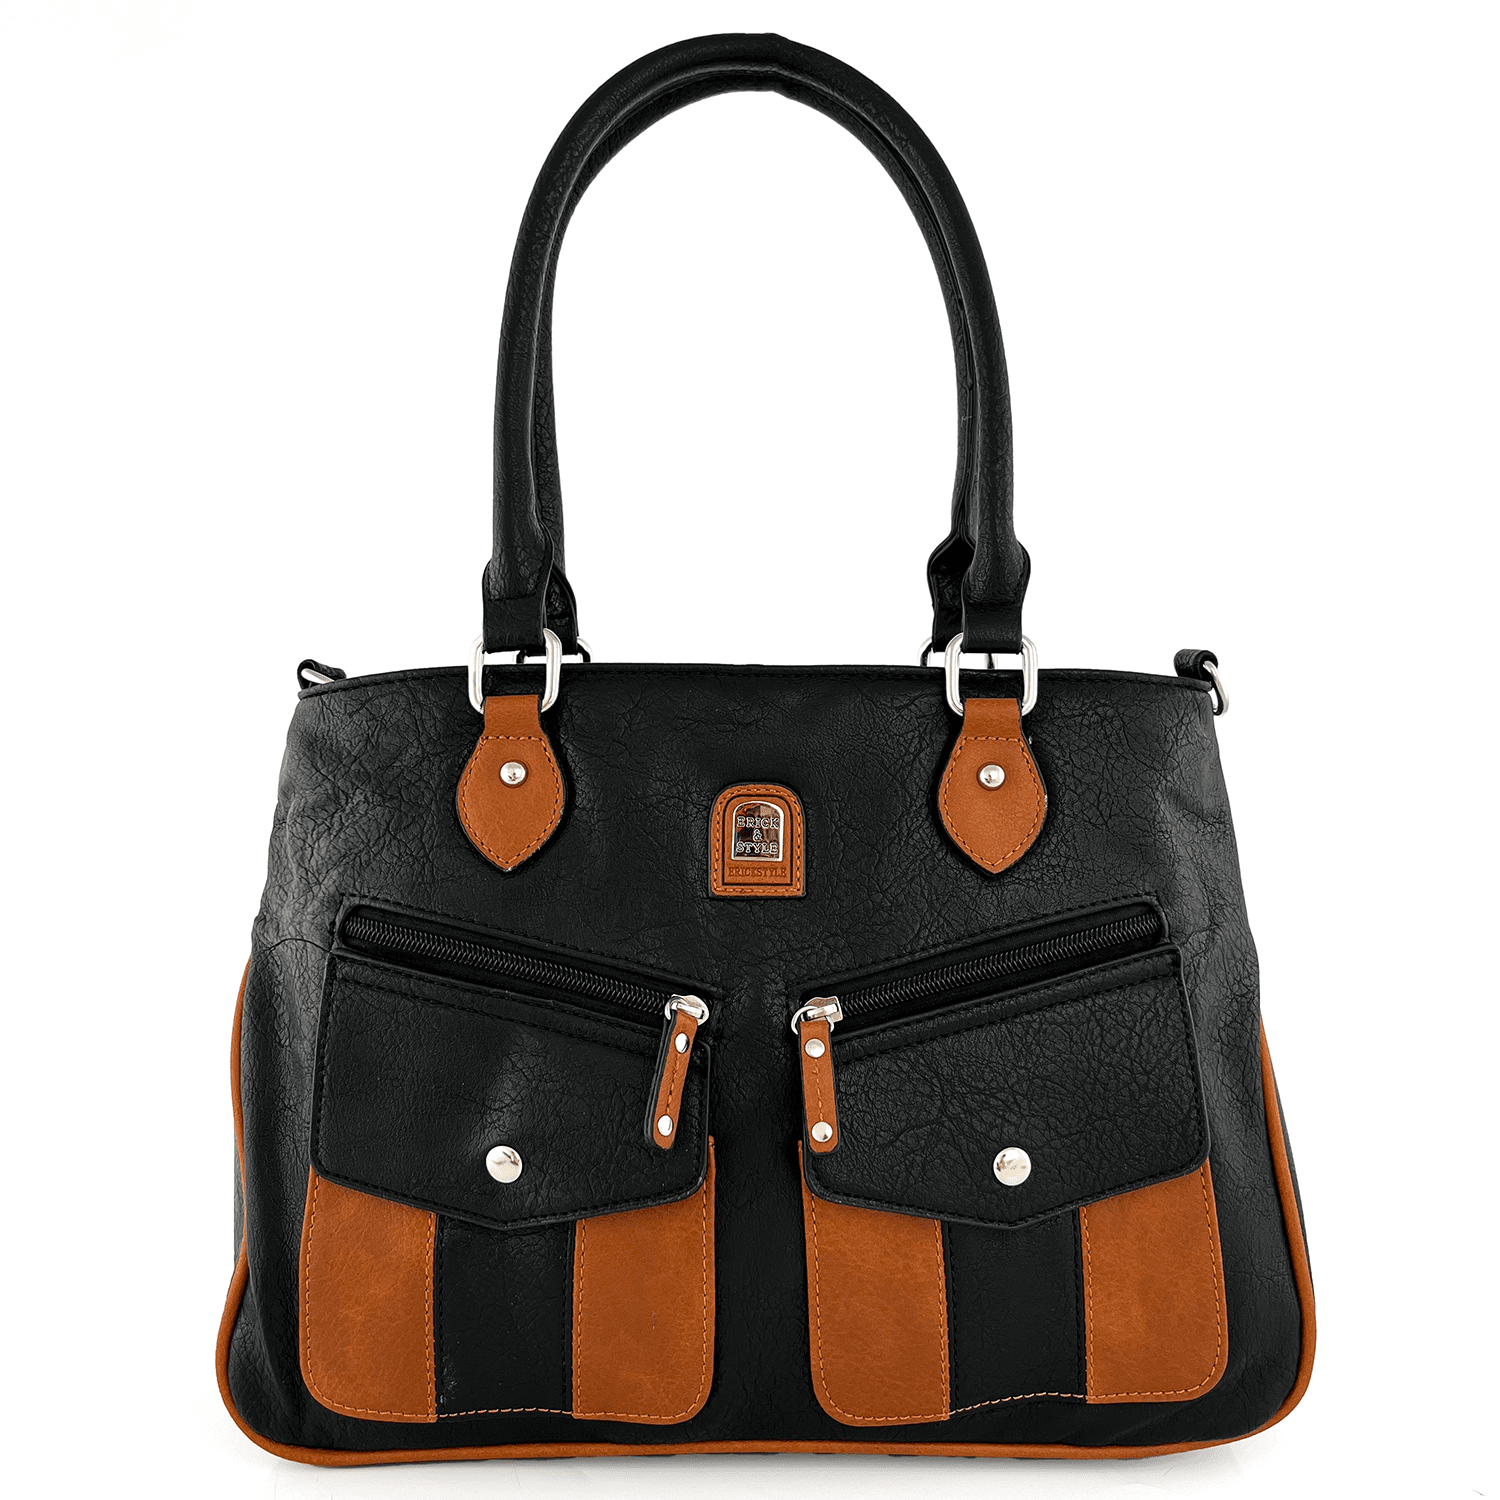 Дамска чанта тип торба с 2 отделения - черно/керемидено кафяво